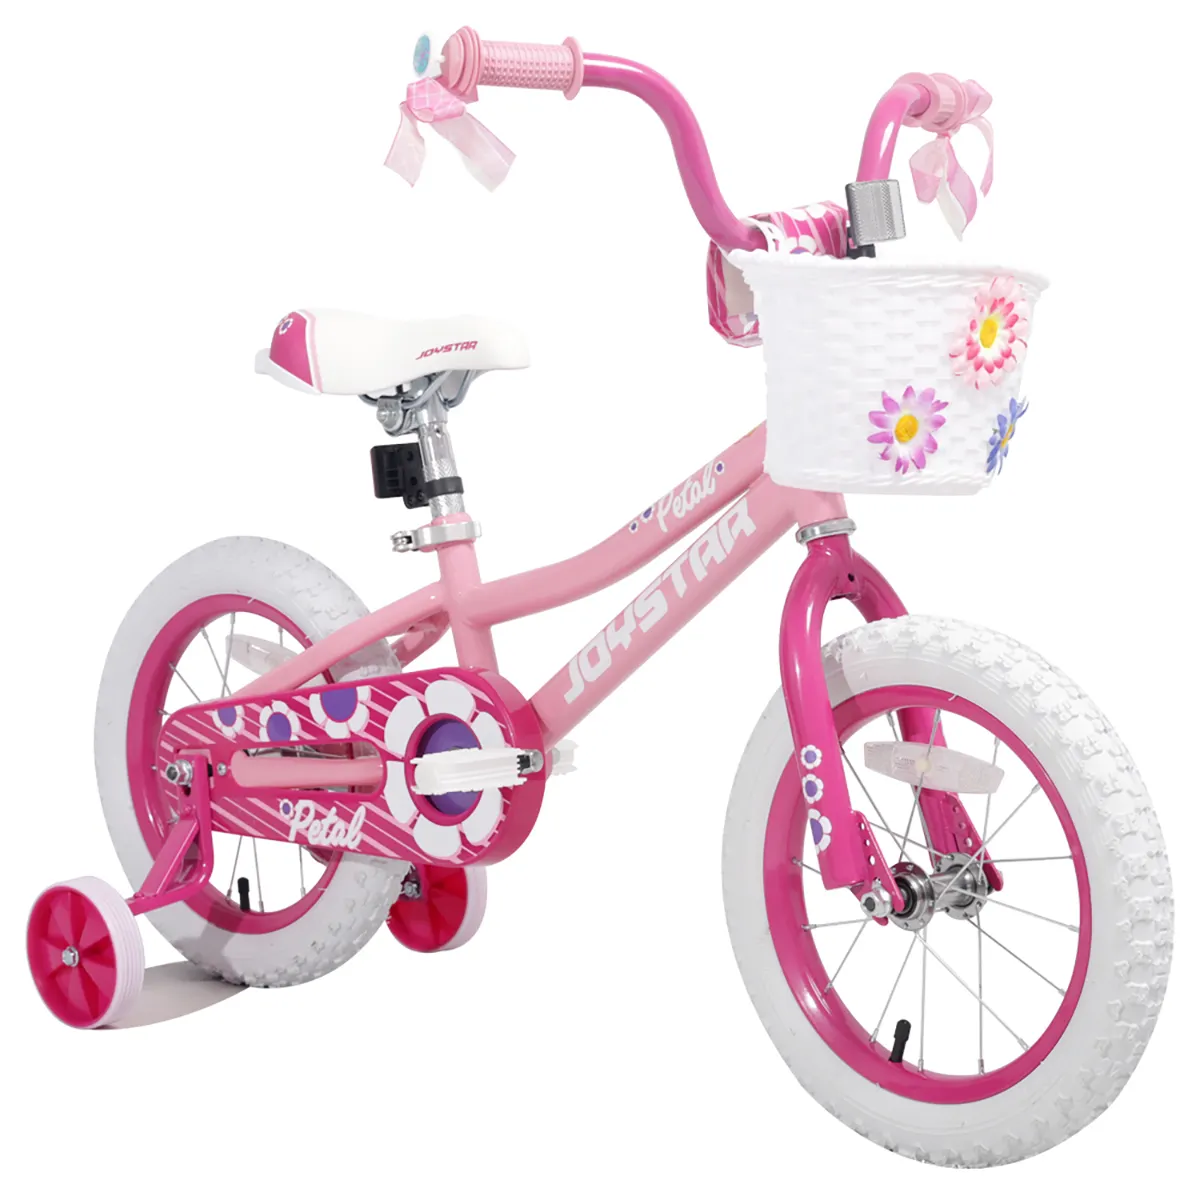 Велосипед розовый 14. Велосипед Kids Bike 14 для девочки. Велосипед Kids Bike hour 14 для девочки. Розовый трехколесный велосипед для девочки. Розовый велосипед с корзинкой для девочки.